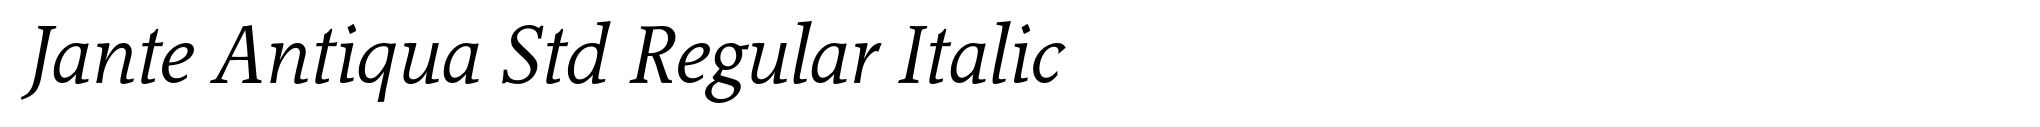 Jante Antiqua Std Regular Italic image